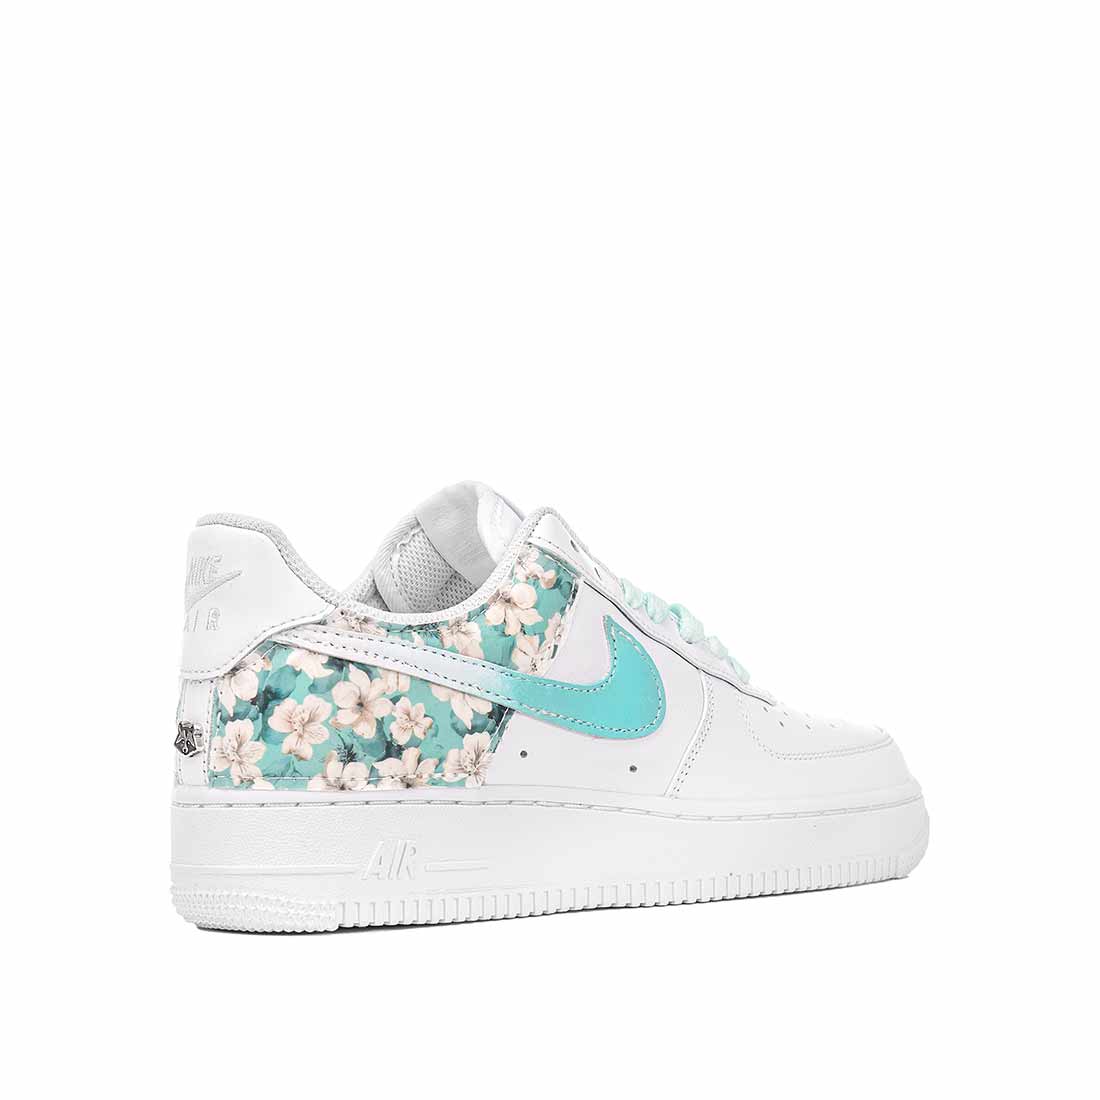 Nike bianche con fiori bianchi e swoosh tiffany